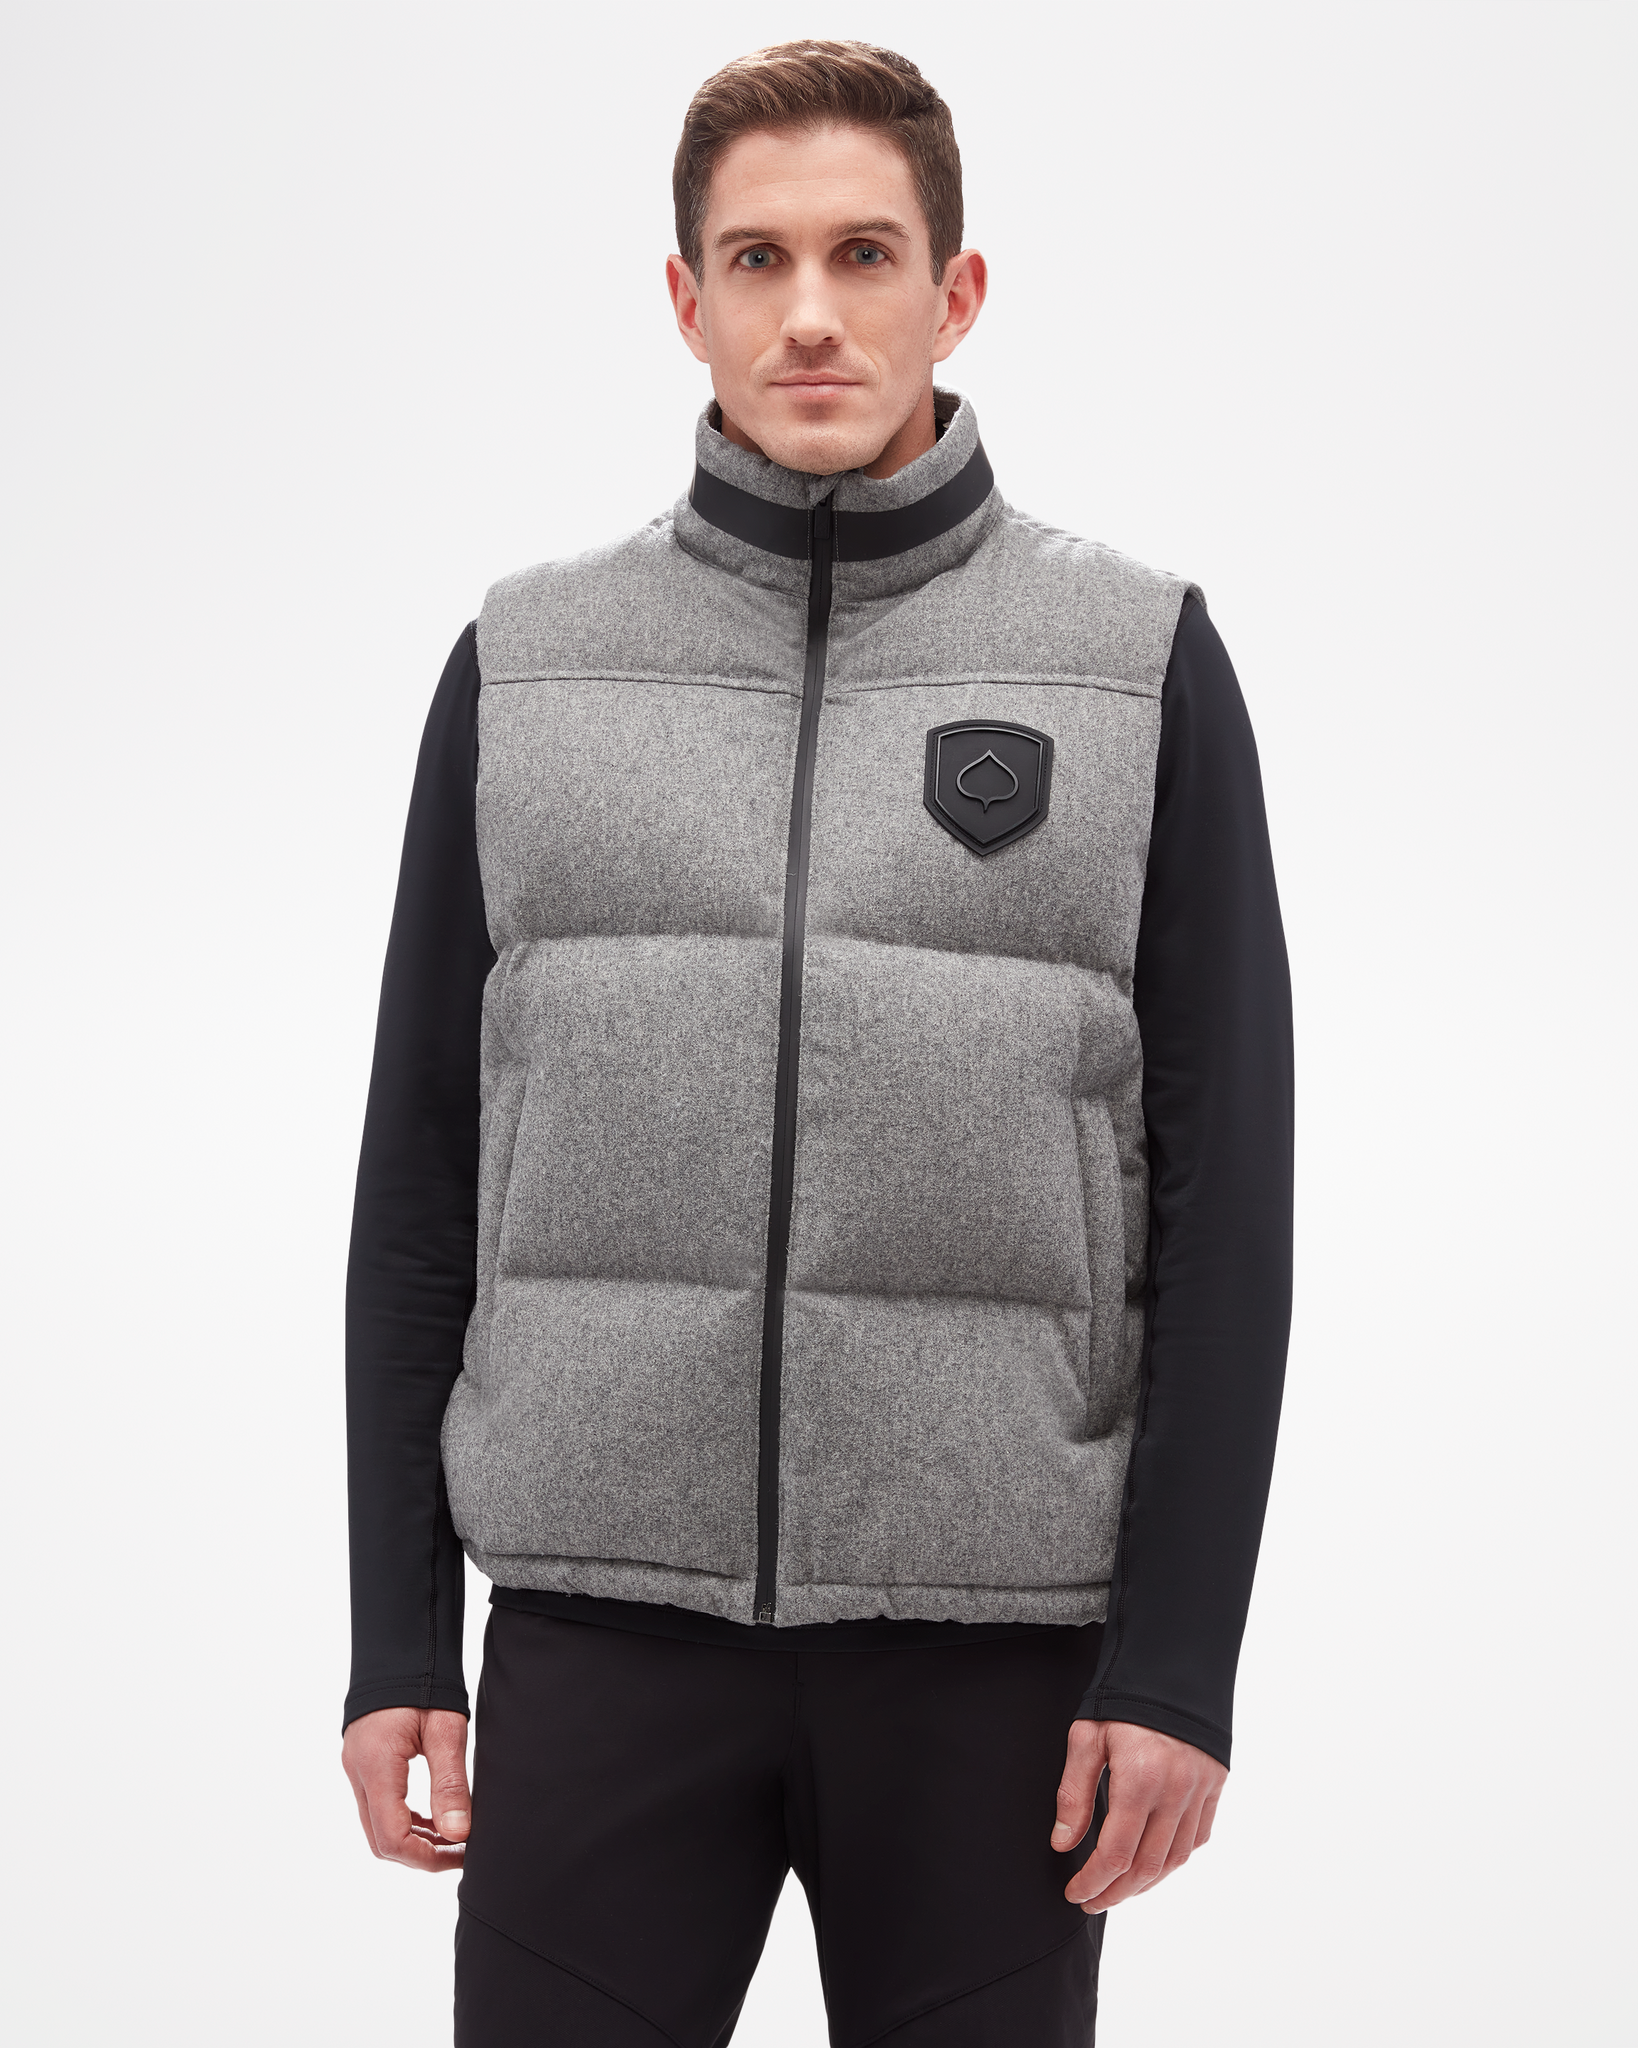 Kritisch Oraal Twinkelen ASPENX Men's Wool Vest | Merino Wool & Down Vest for Men